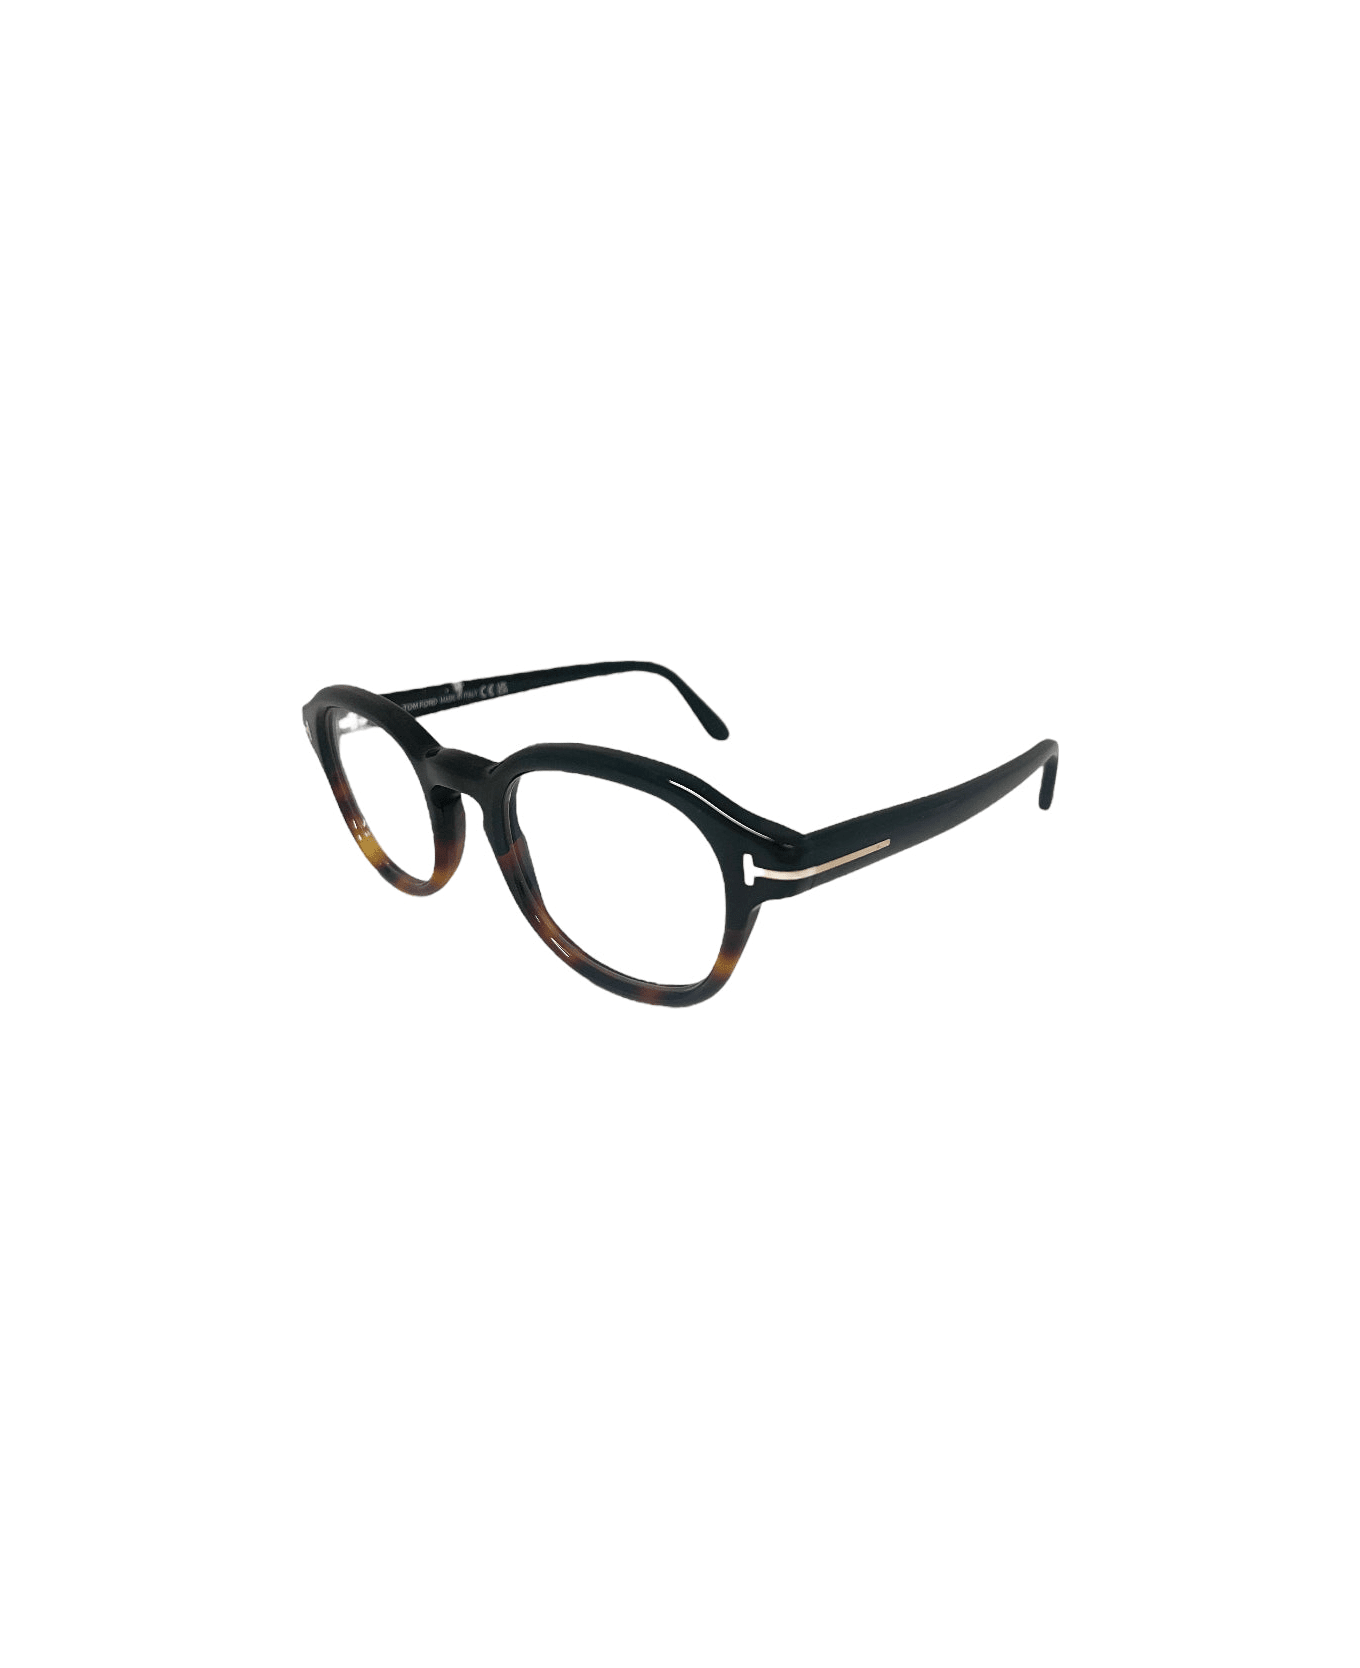 Tom Ford Eyewear Ft5871 - Havana Glasses アイウェア